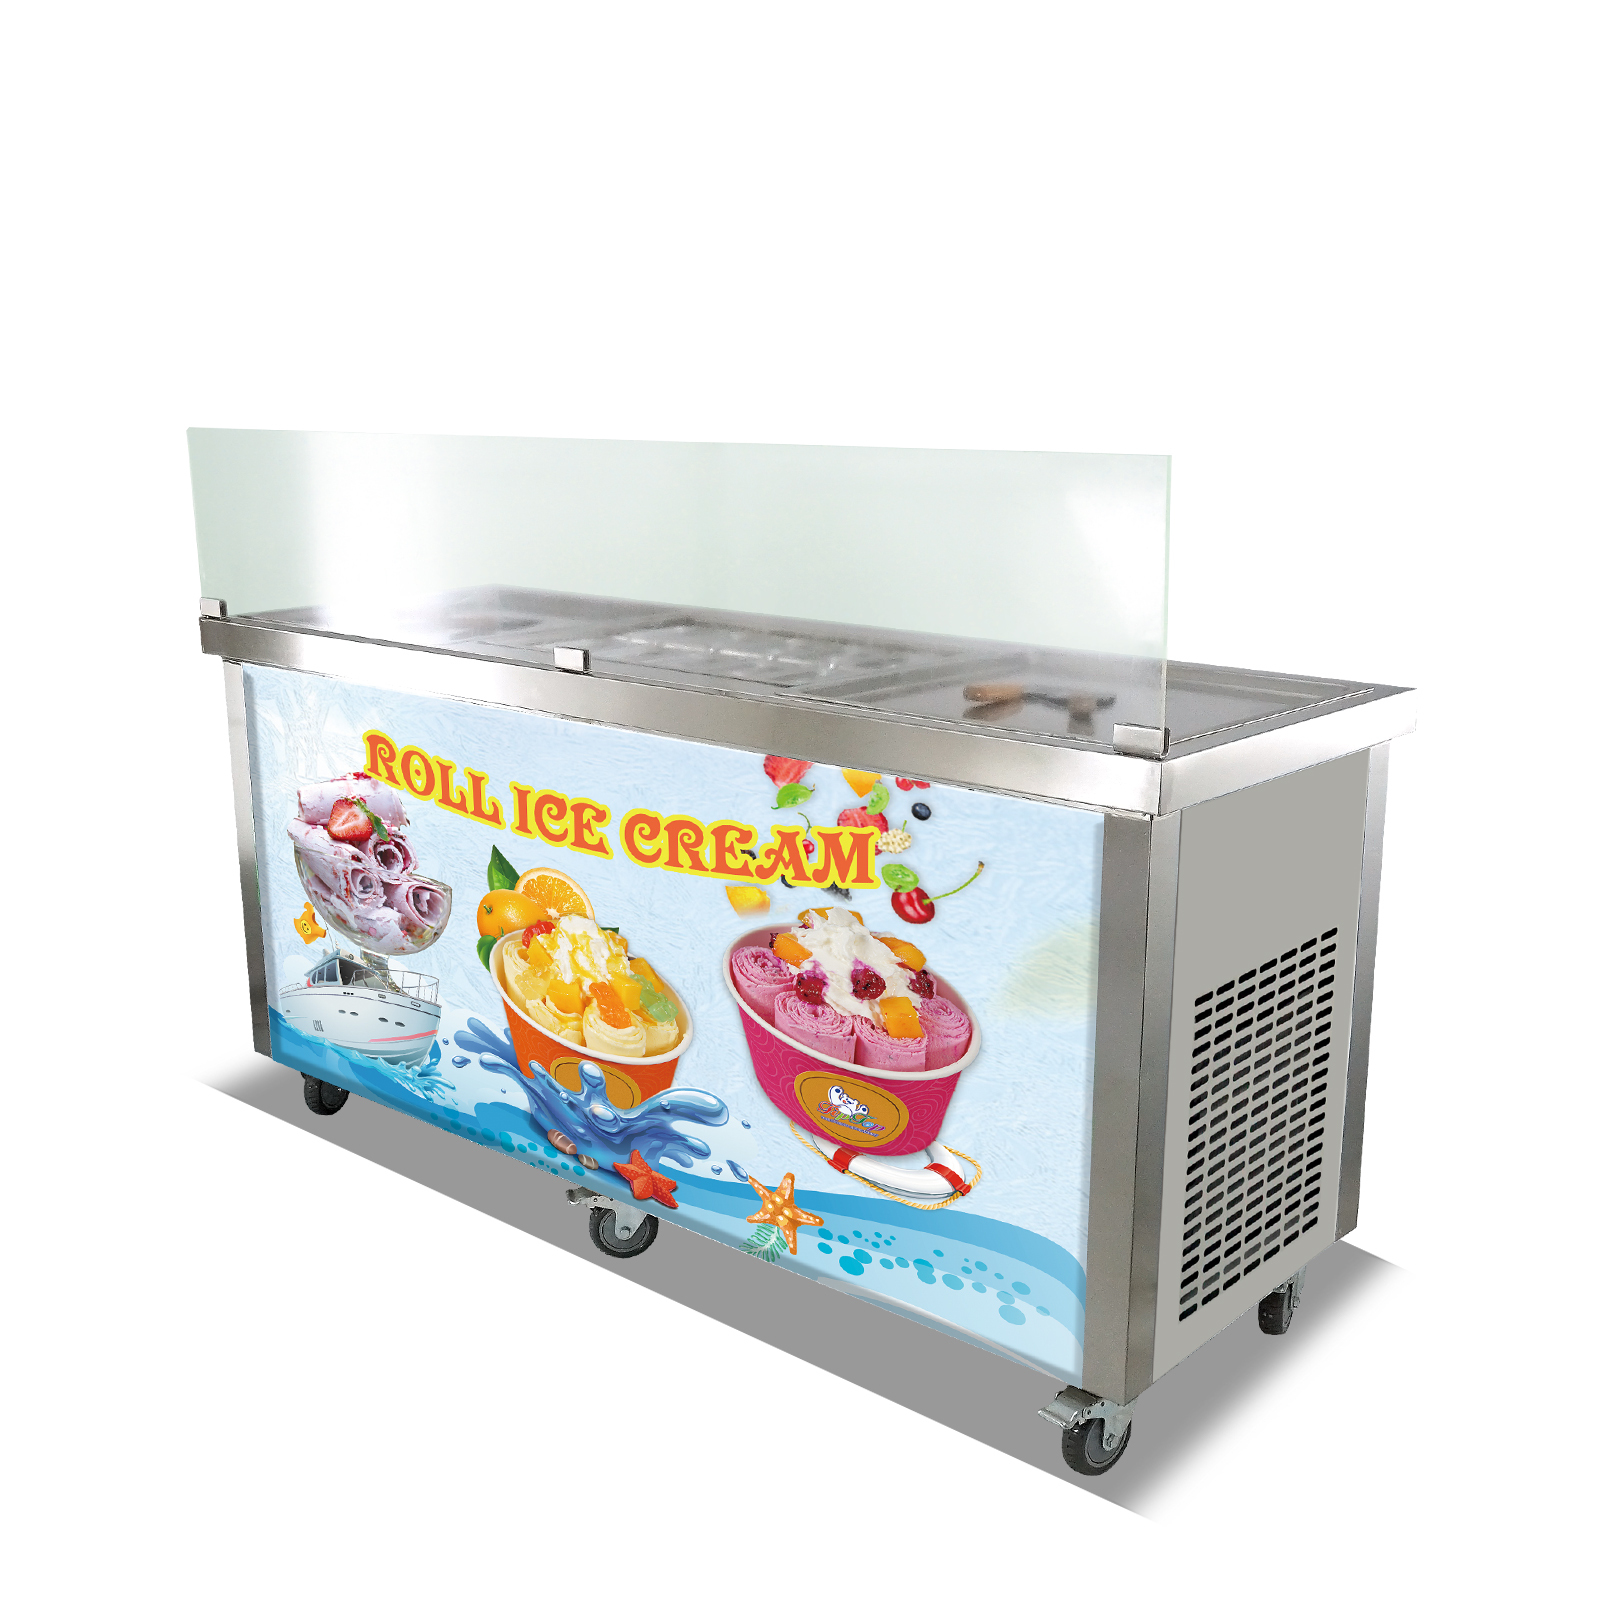 Commercial Use Ice Cream Rolls Machine Thailand Fry Rolls Ice Cream Machine,  Flat Pan Fried Ice Roll Yogurt Machine - Ice Cream Makers - AliExpress